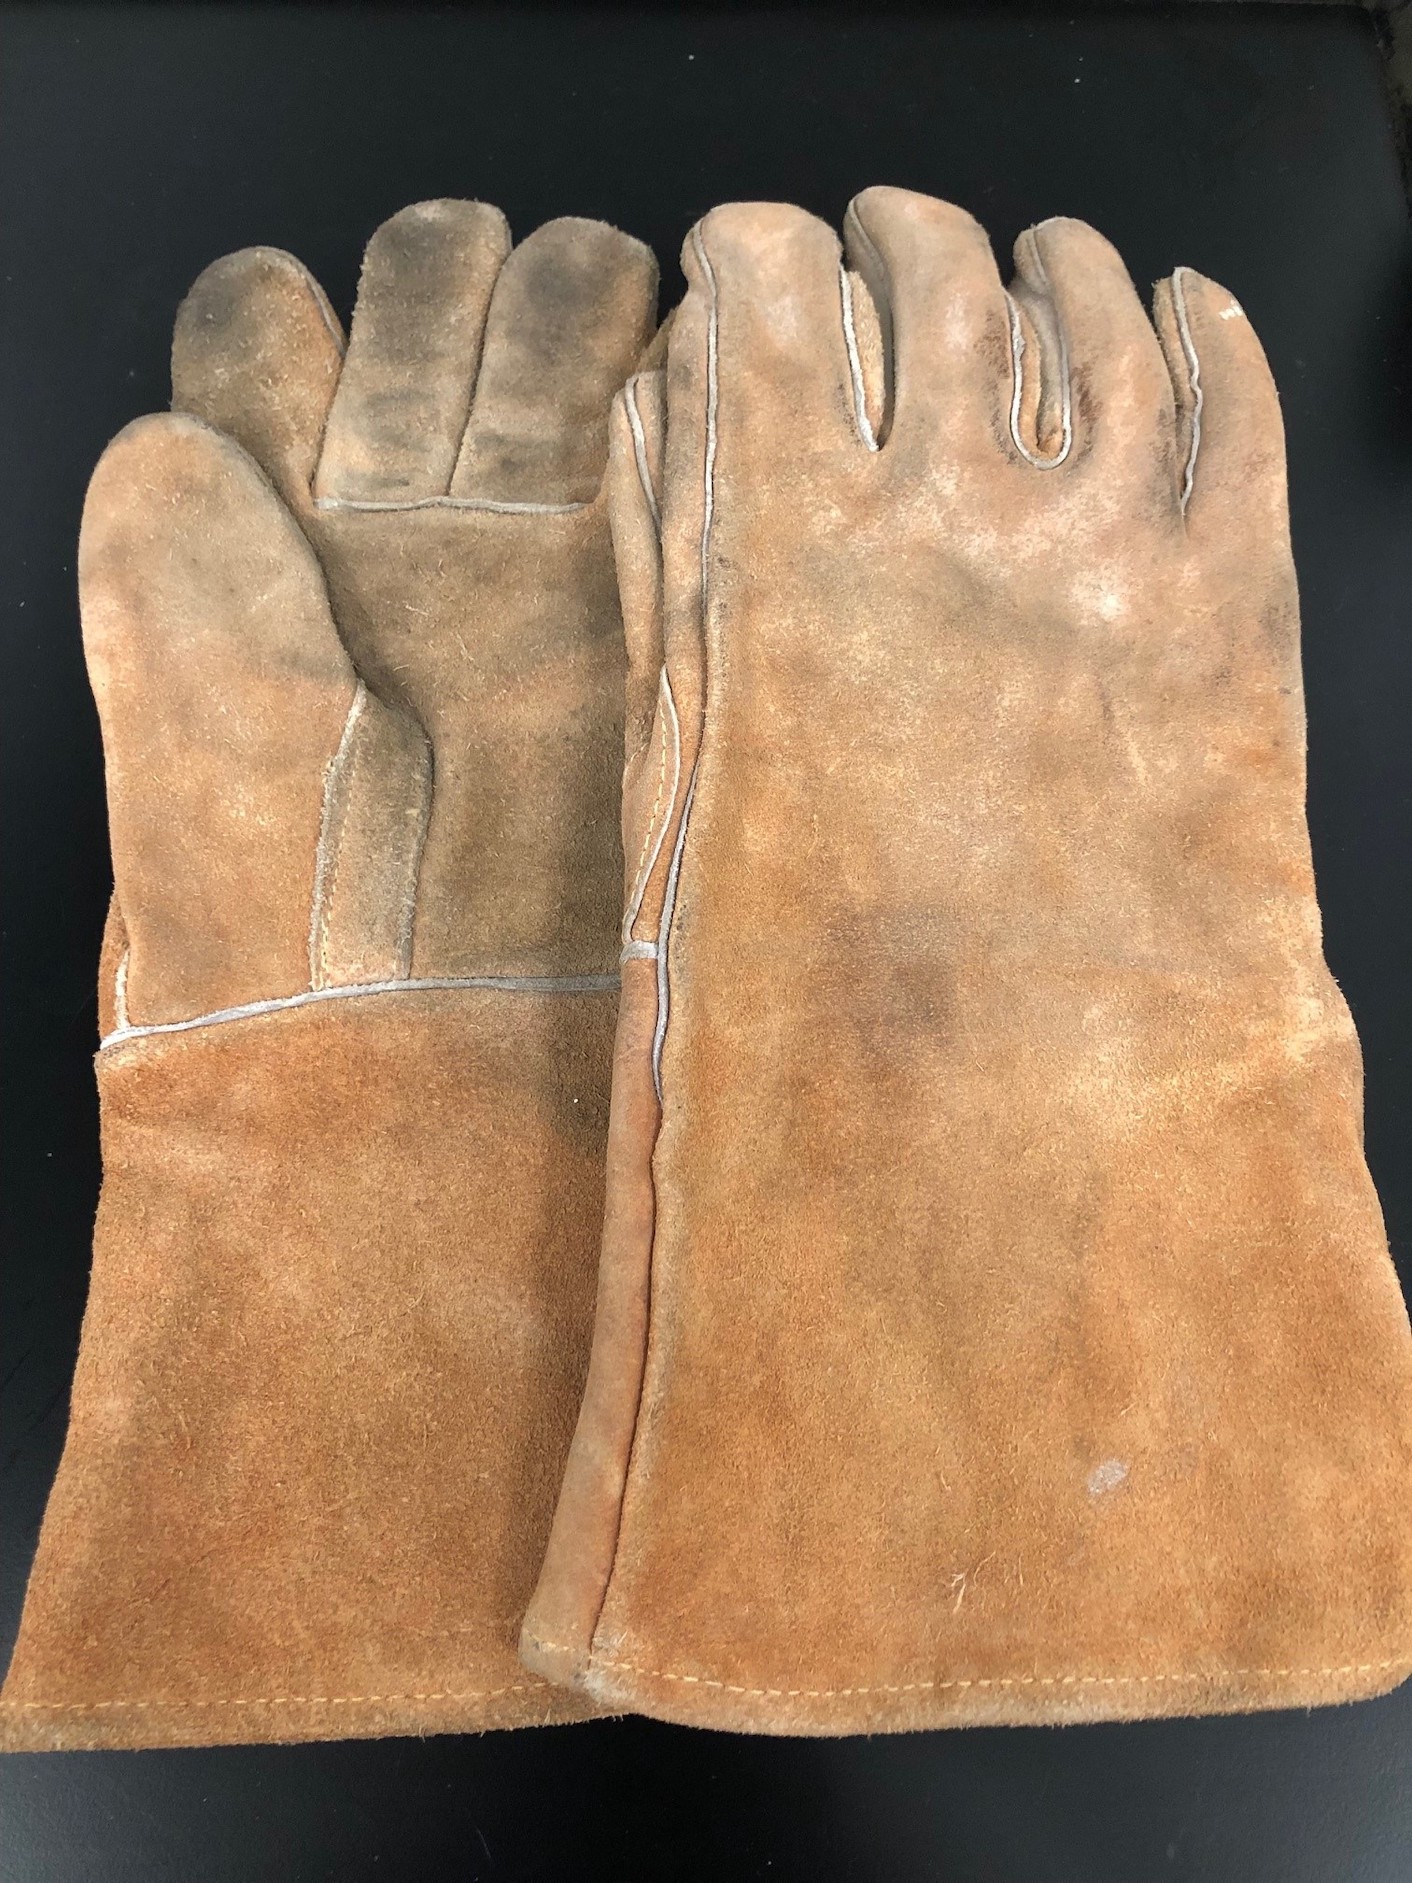 Battered welding gloves